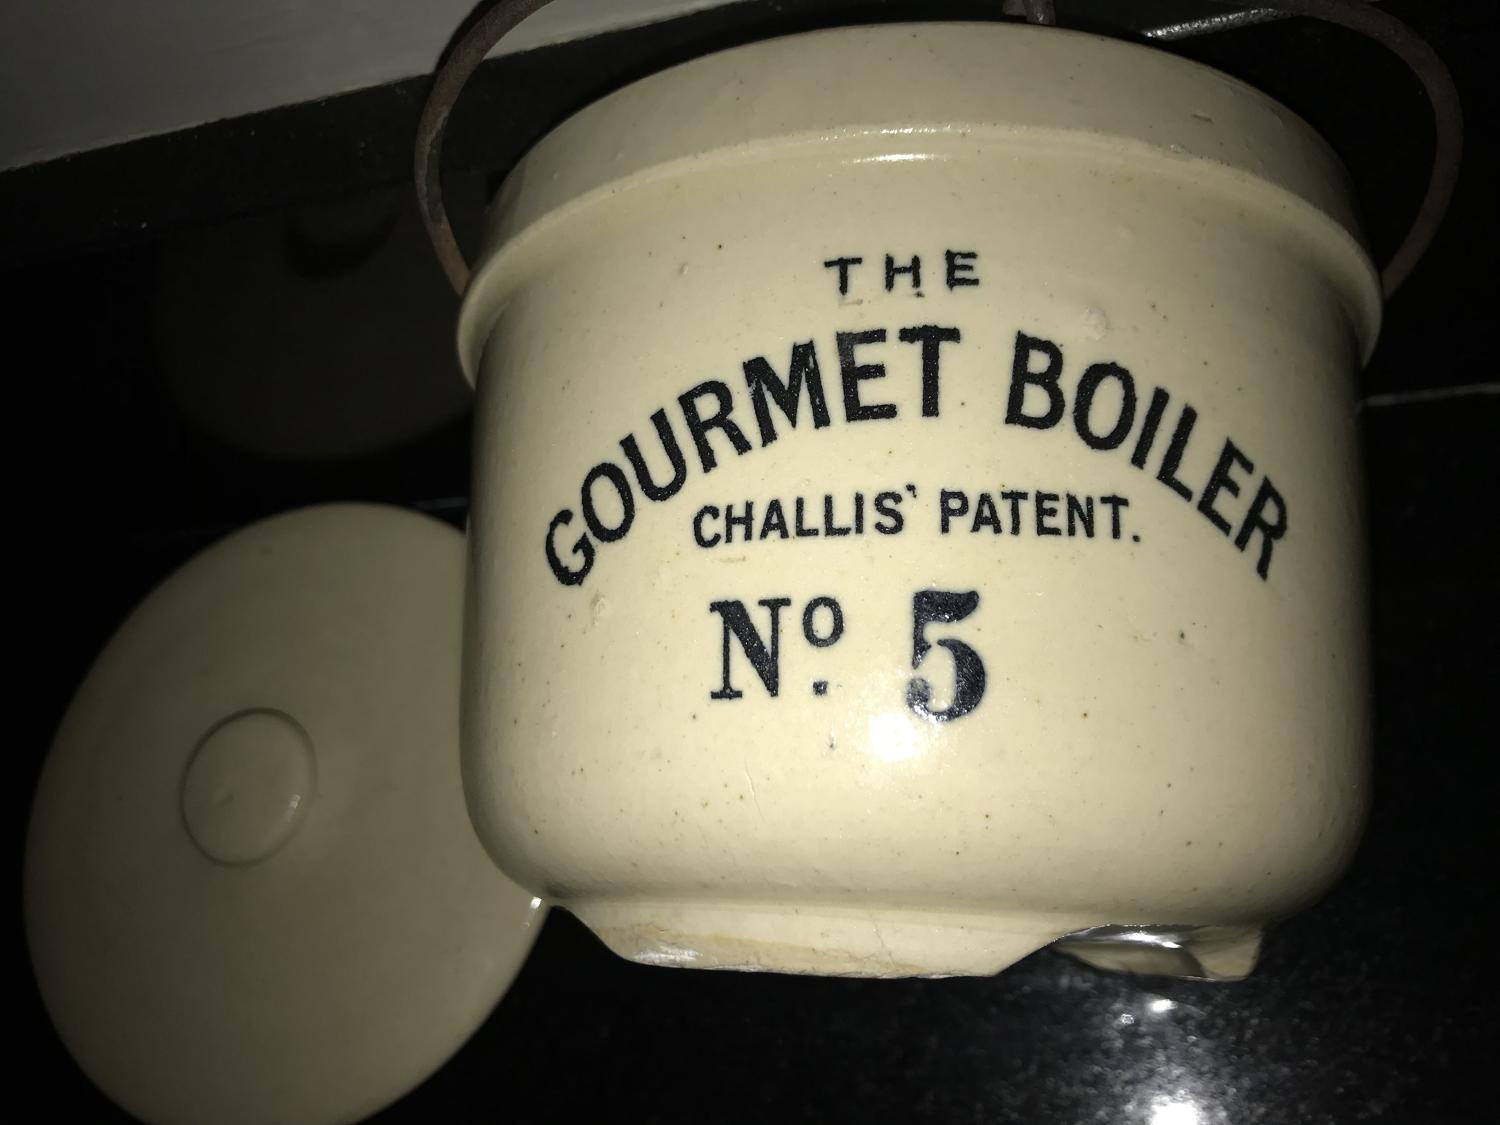 Gourmet Boiler N0.5